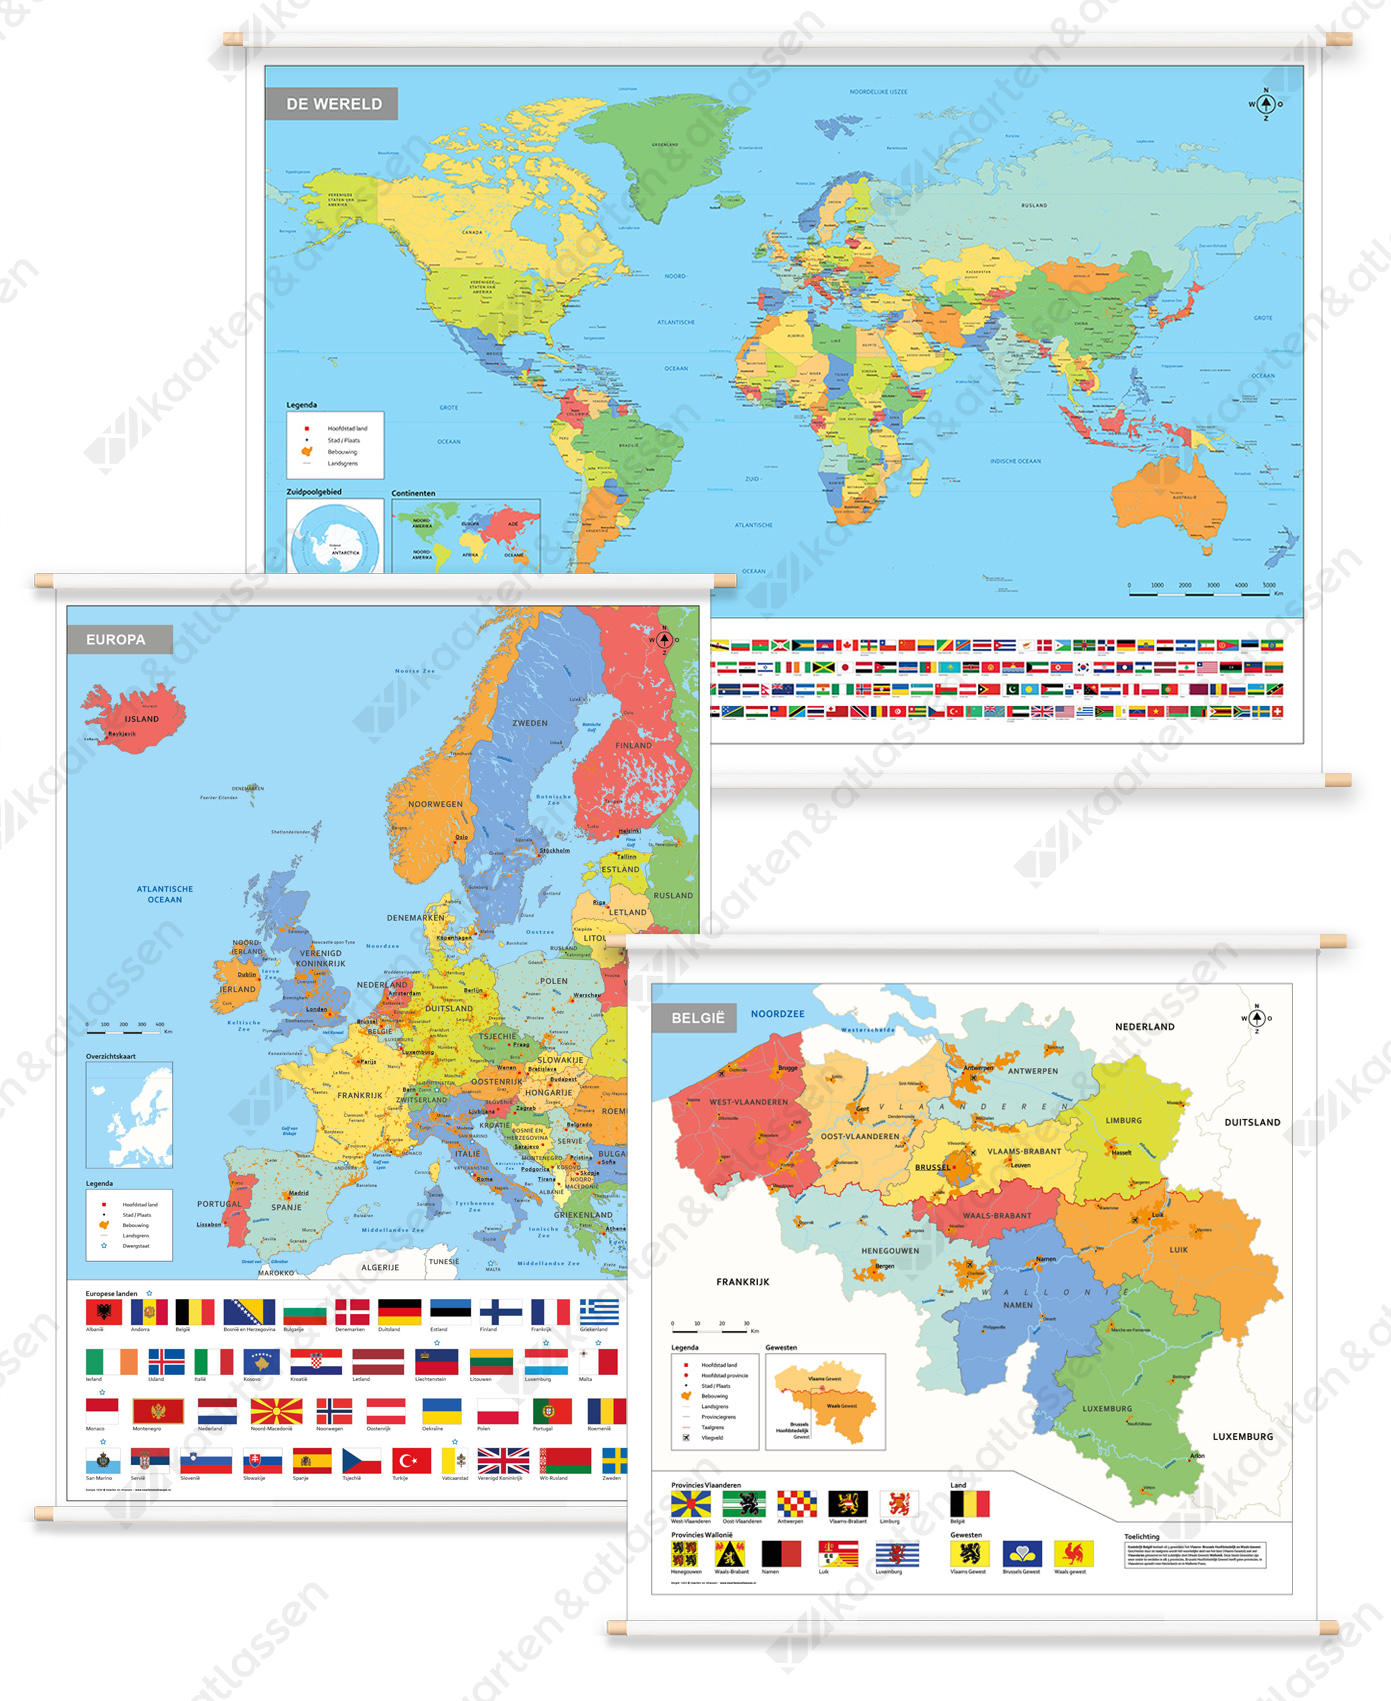 3 Schoolkaarten België/Europa/Wereld met vlaggen